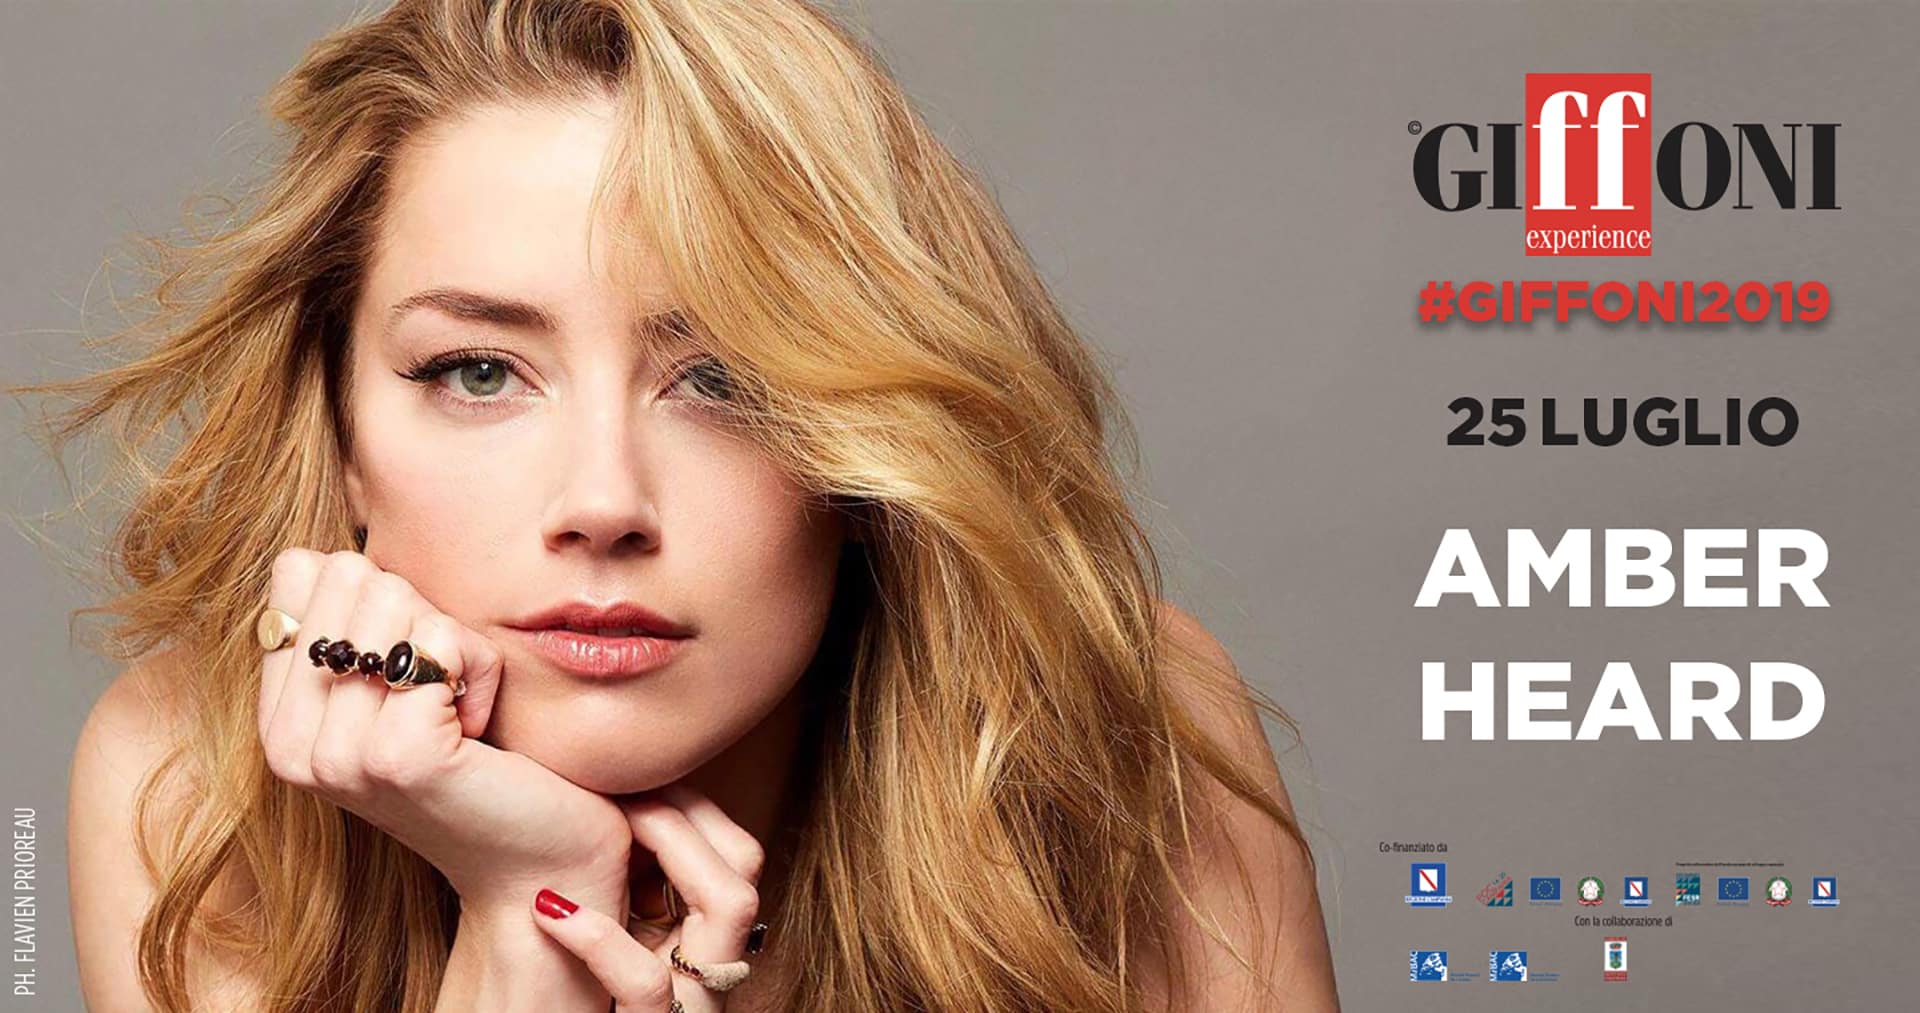 Giffoni 2019: Amber Heard riceverà il Giffoni Experience Award